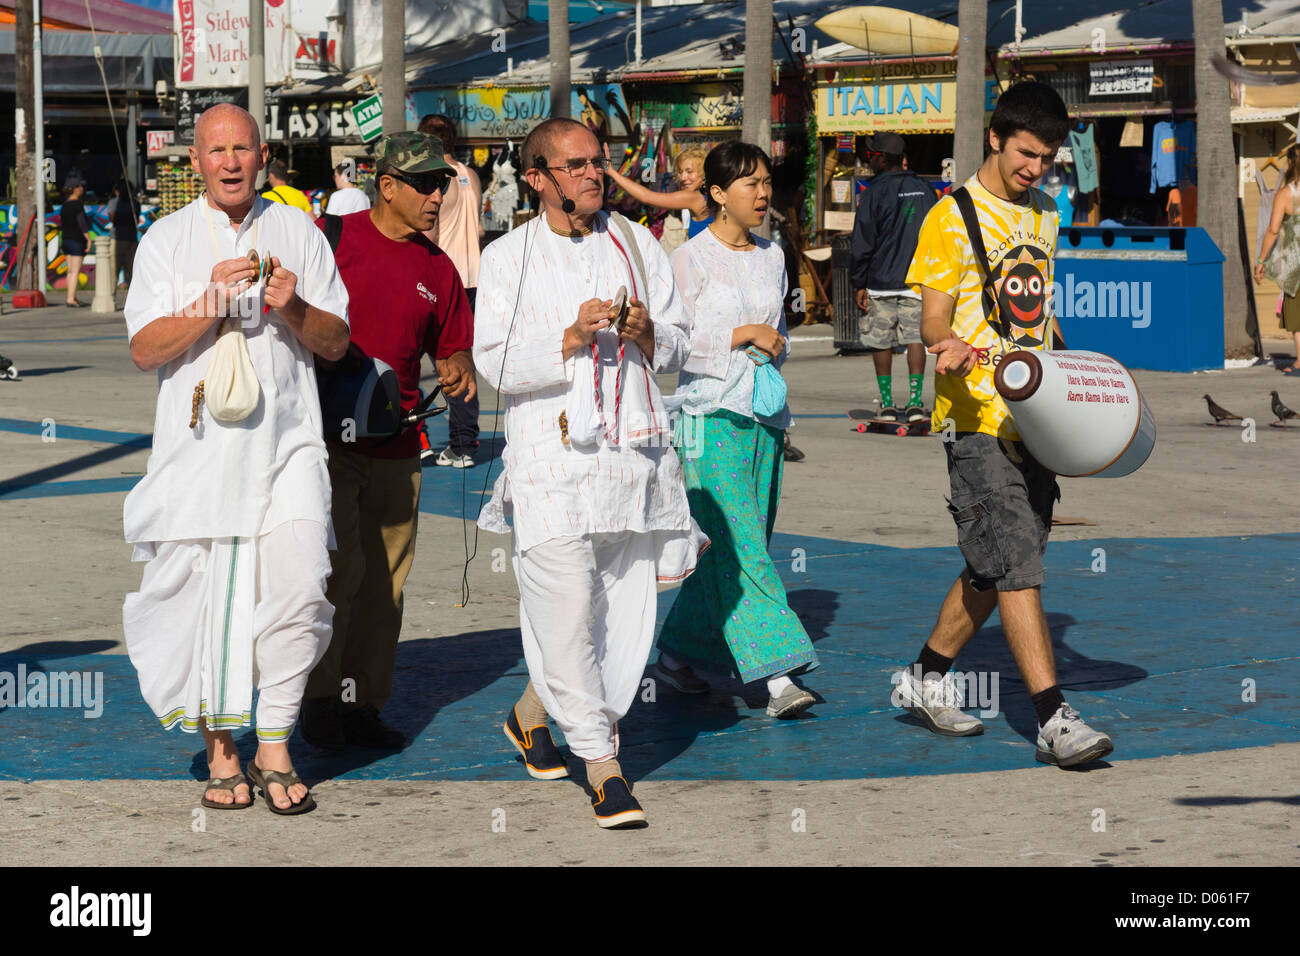 Venice Beach, LA, Kalifornien Badeort - Hare-Krishna-buddhistische Mönche marschieren und Gebet Mantra chanten. Stockfoto